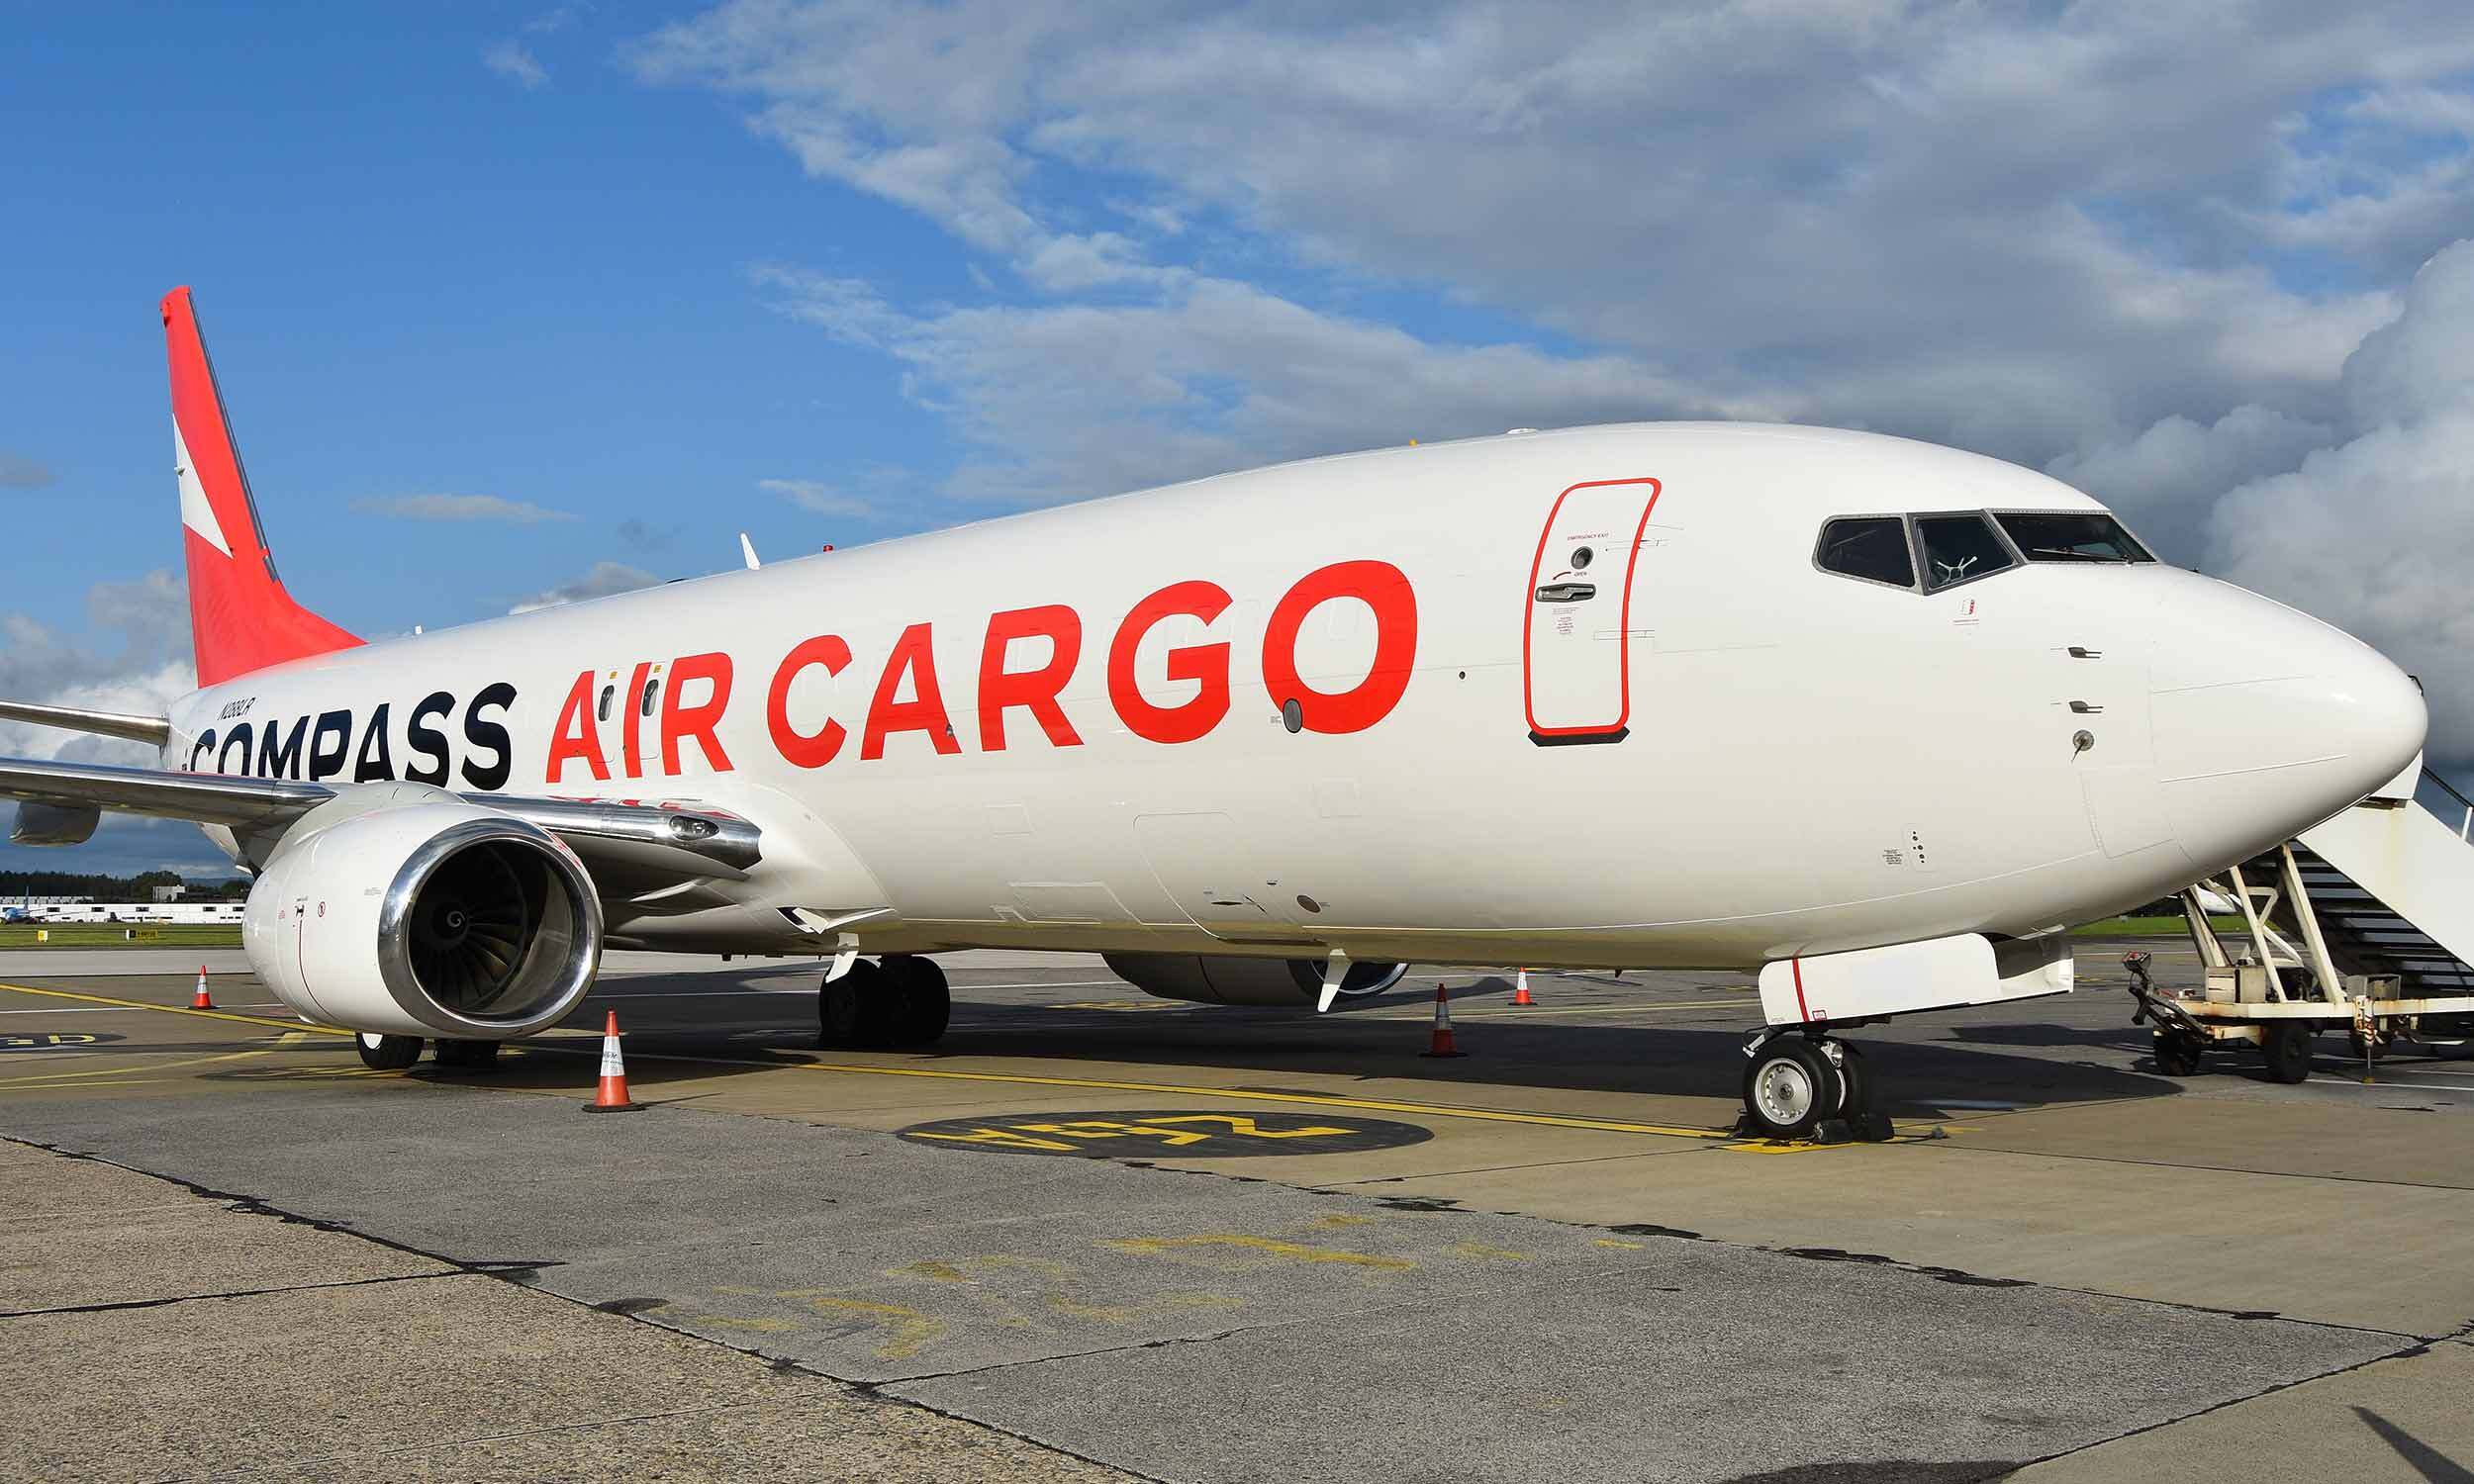 Compass-air-cargo-airline-branding-livery-Novagram-02-C